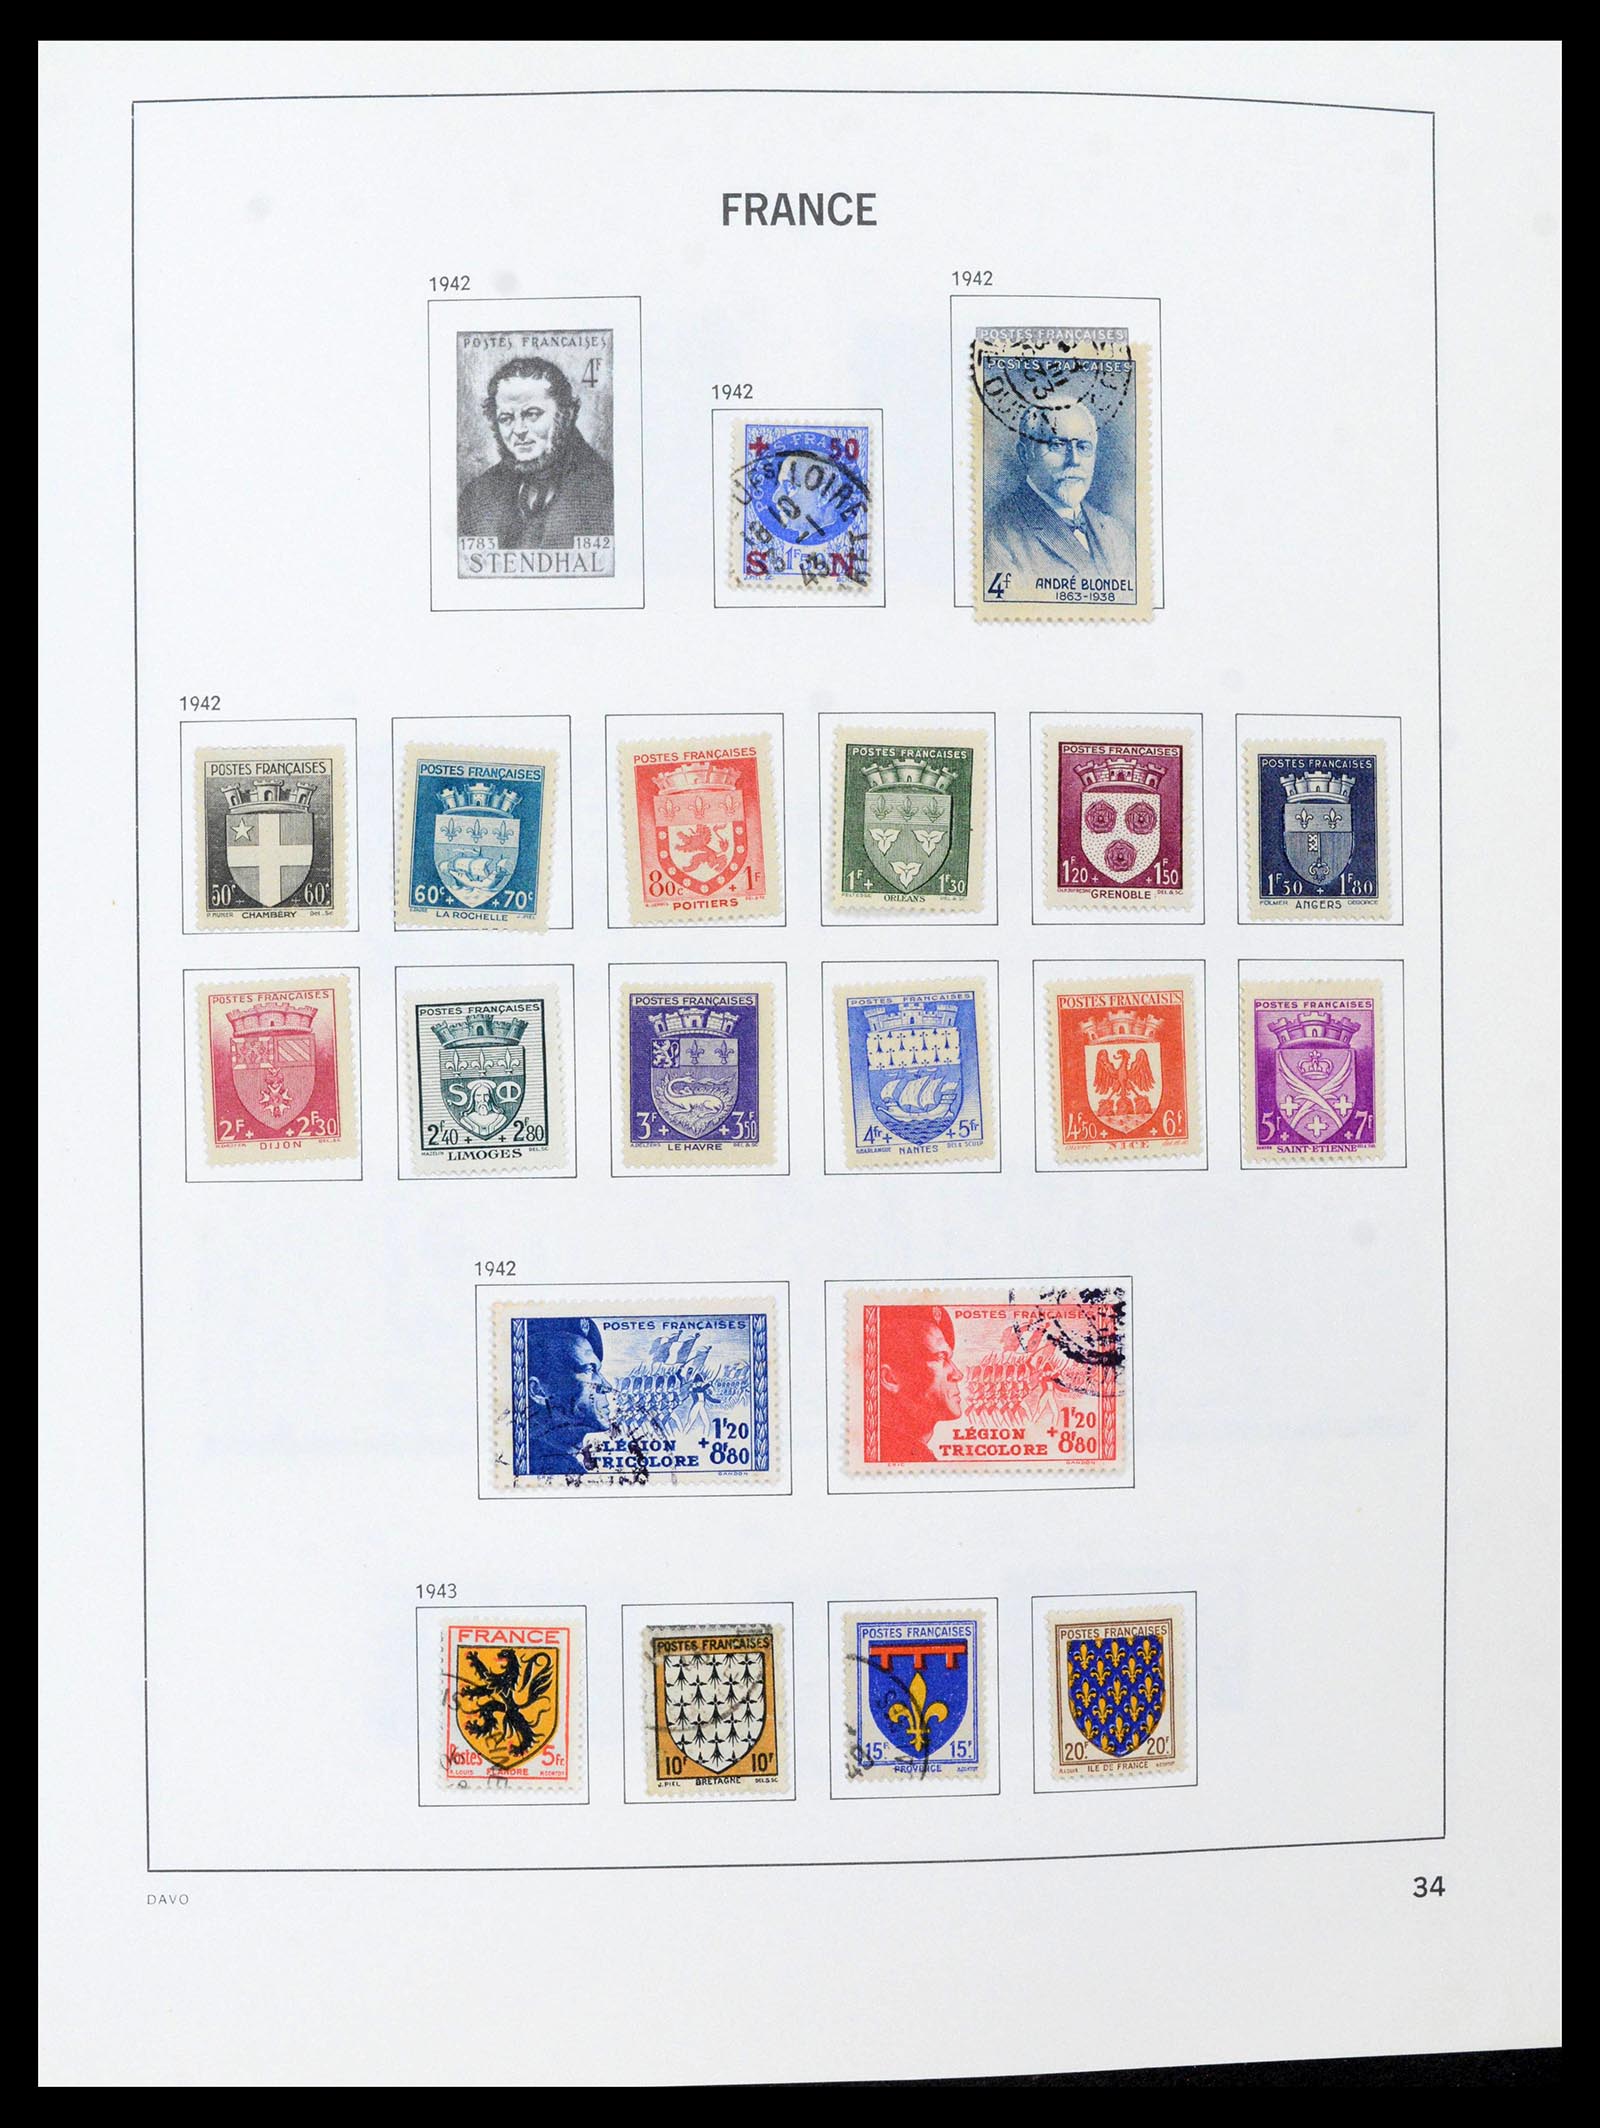 39164 0034 - Postzegelverzameling 39164 Frankrijk 1849-1981.